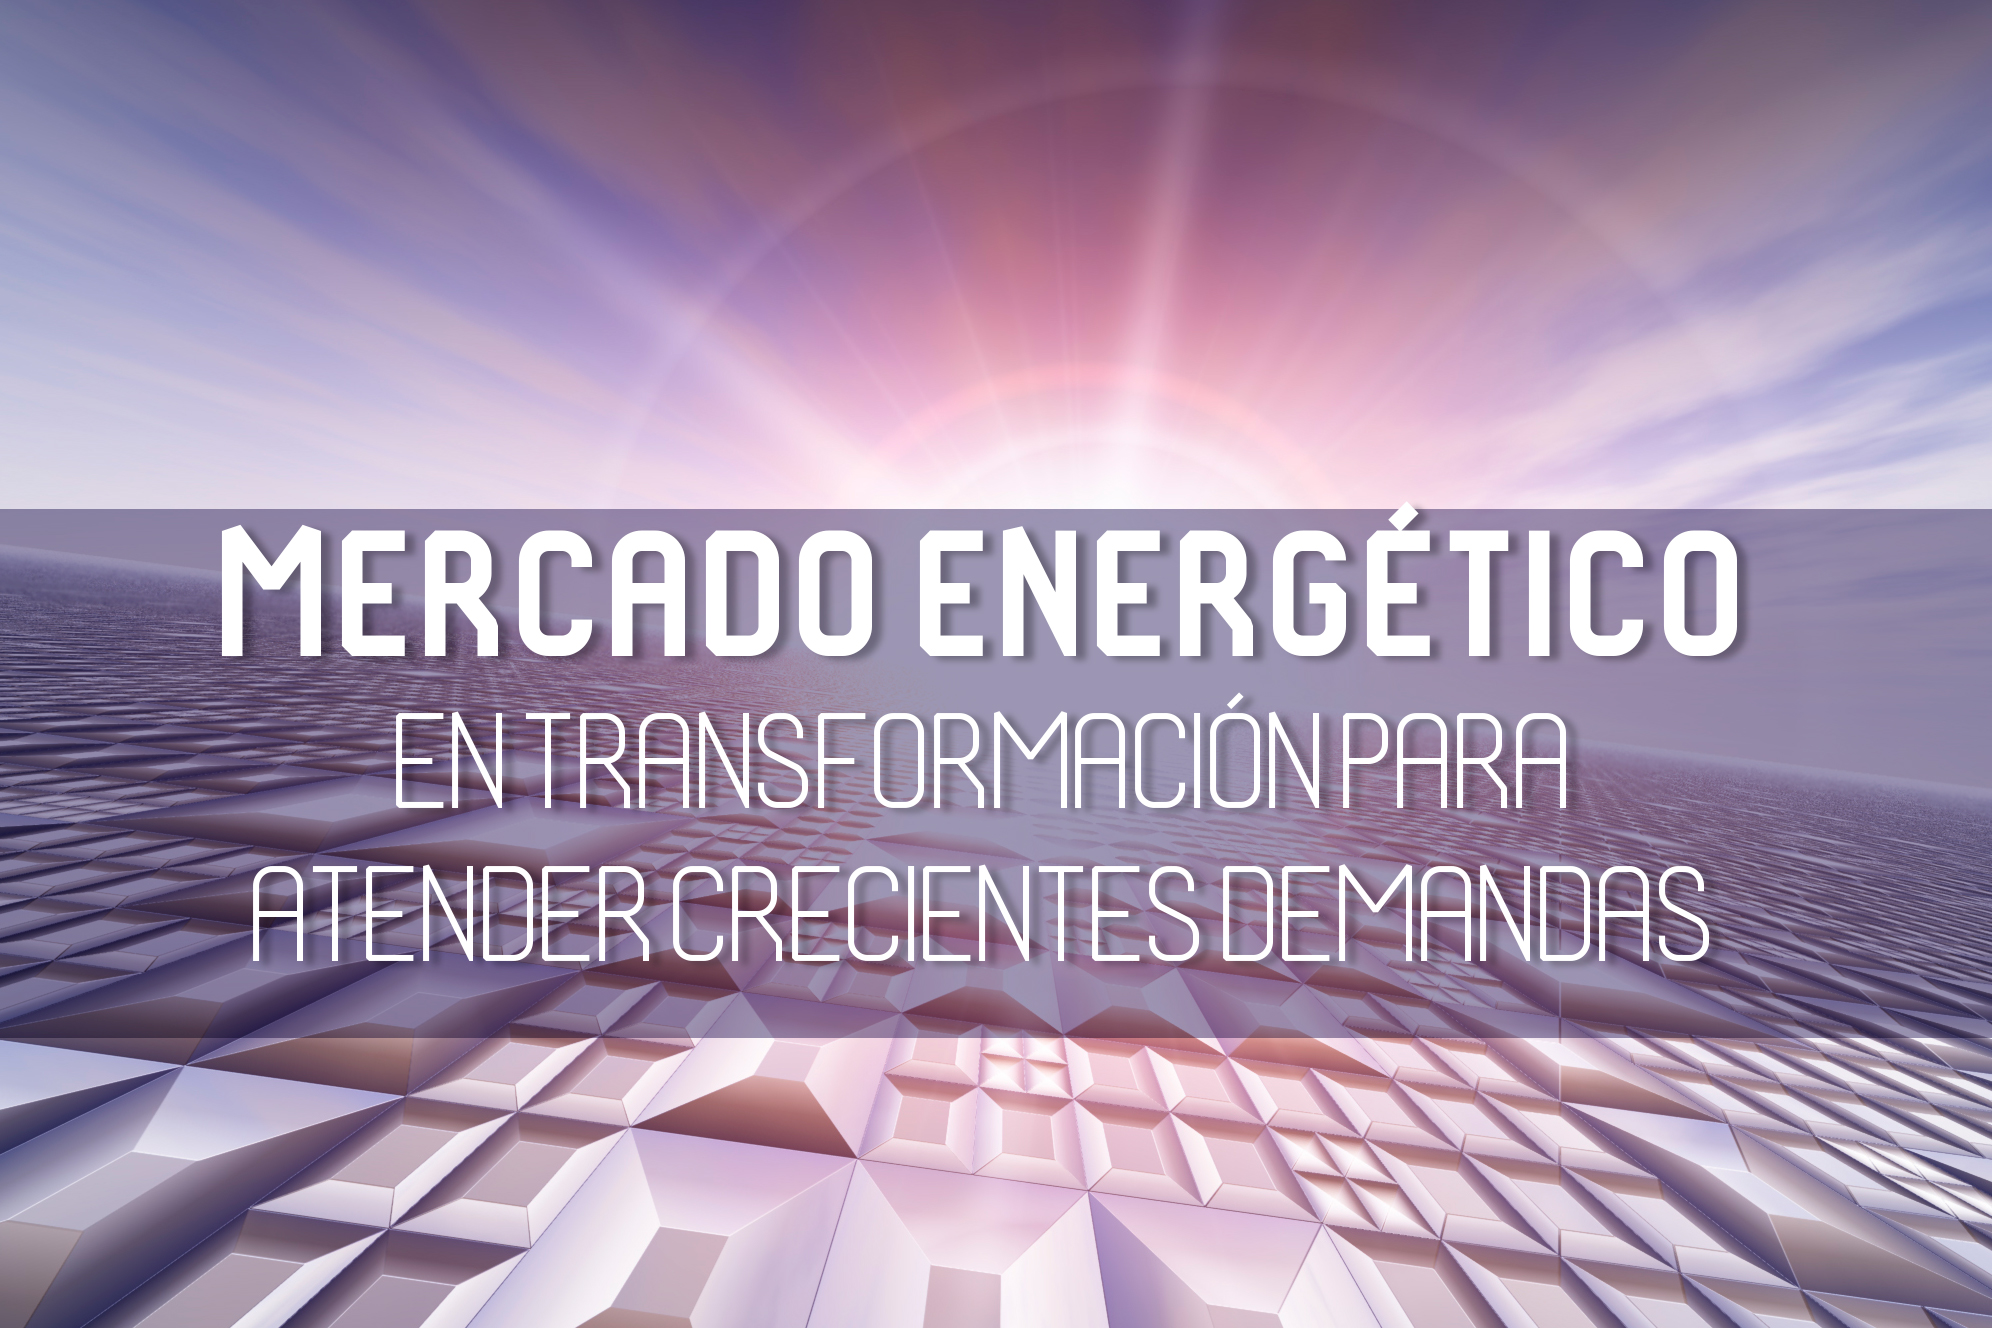 Mercado energético en transformación para atender crecientes demandas -  eSemanal - Noticias del Canal